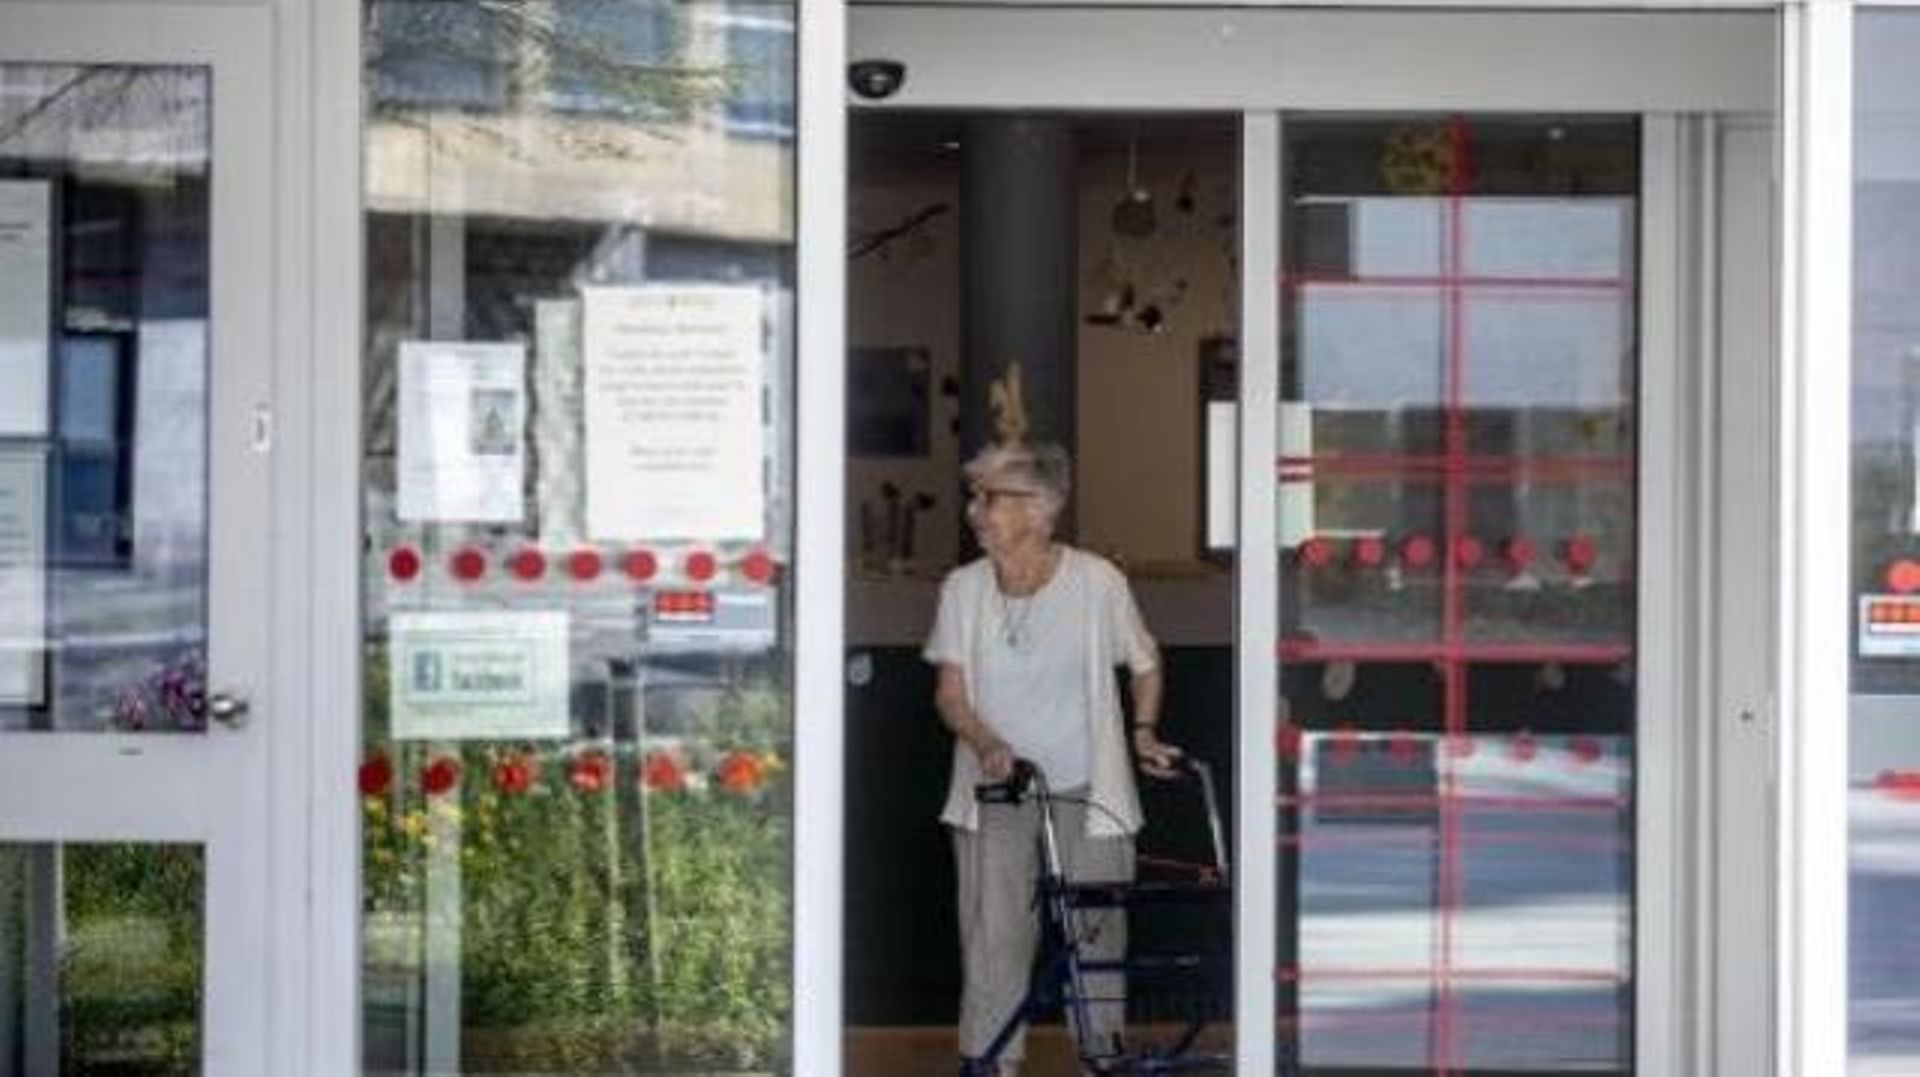 Le nombre d'infections dans les centres de soins résidentiels flamands est en forte hausse